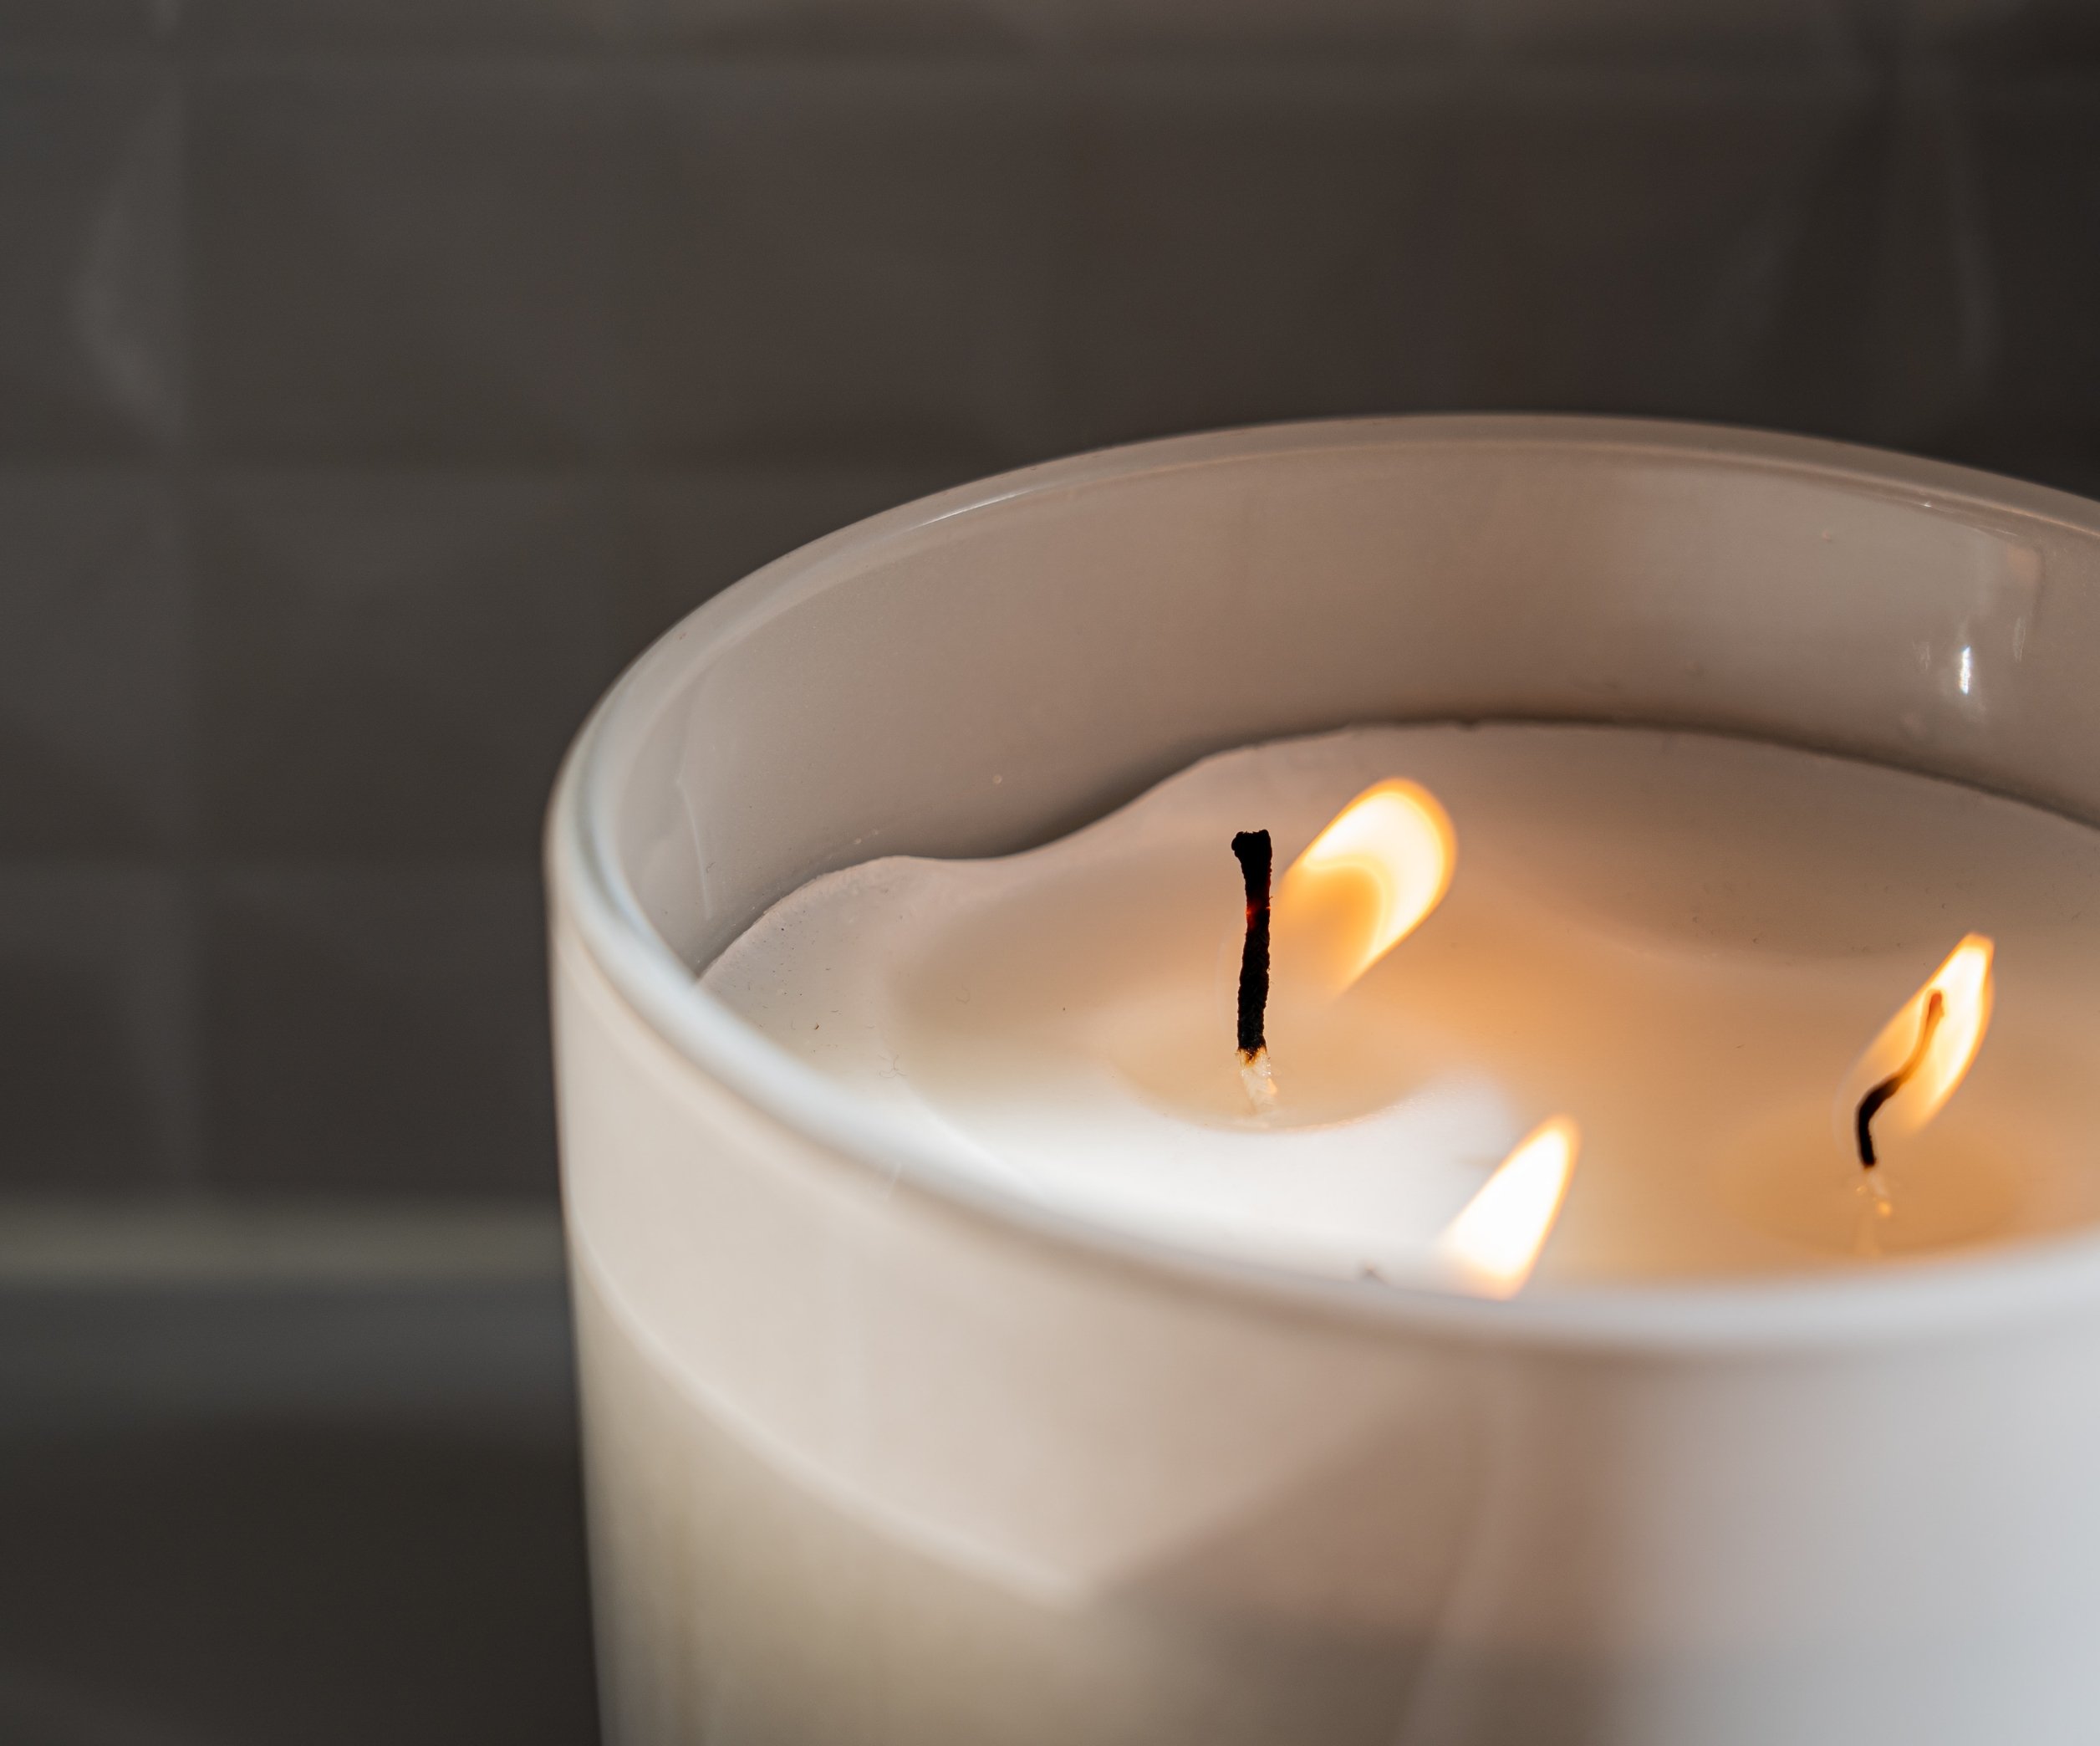 Церковная свеча: обряды. Как почистить квартиру с помощью церковной свечи?